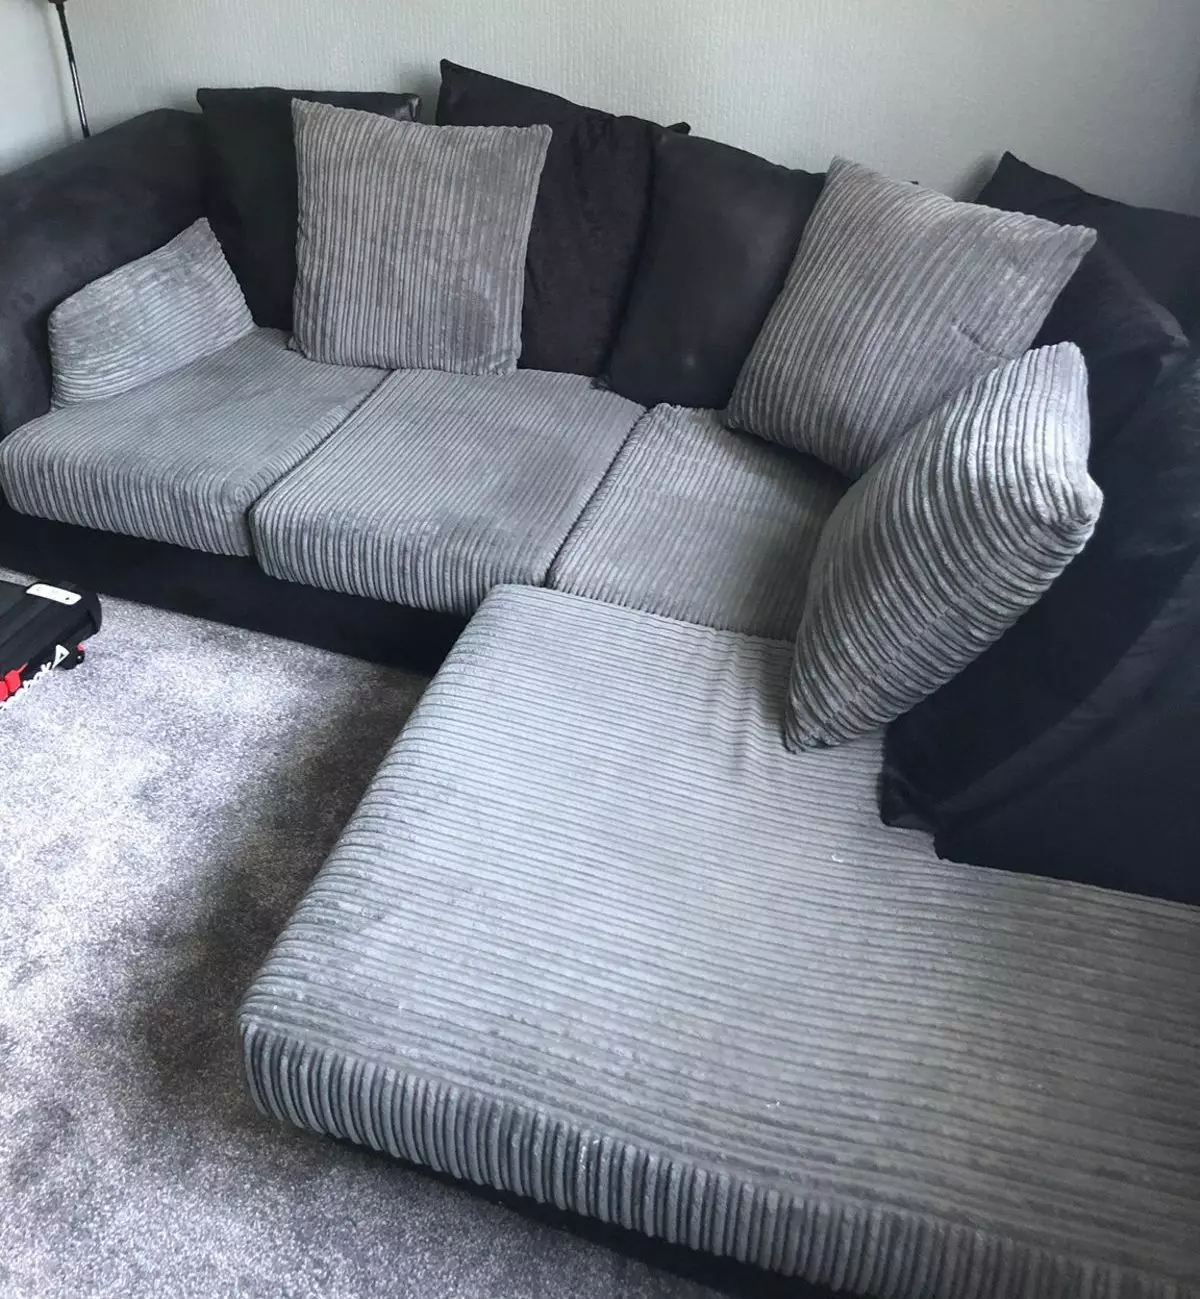 Sofa sudut kecil dengan tempat tidur: sofa kecil 2000x1400 mm dan ukuran lain yang kompak. Pilih mini-sofa 20908_40